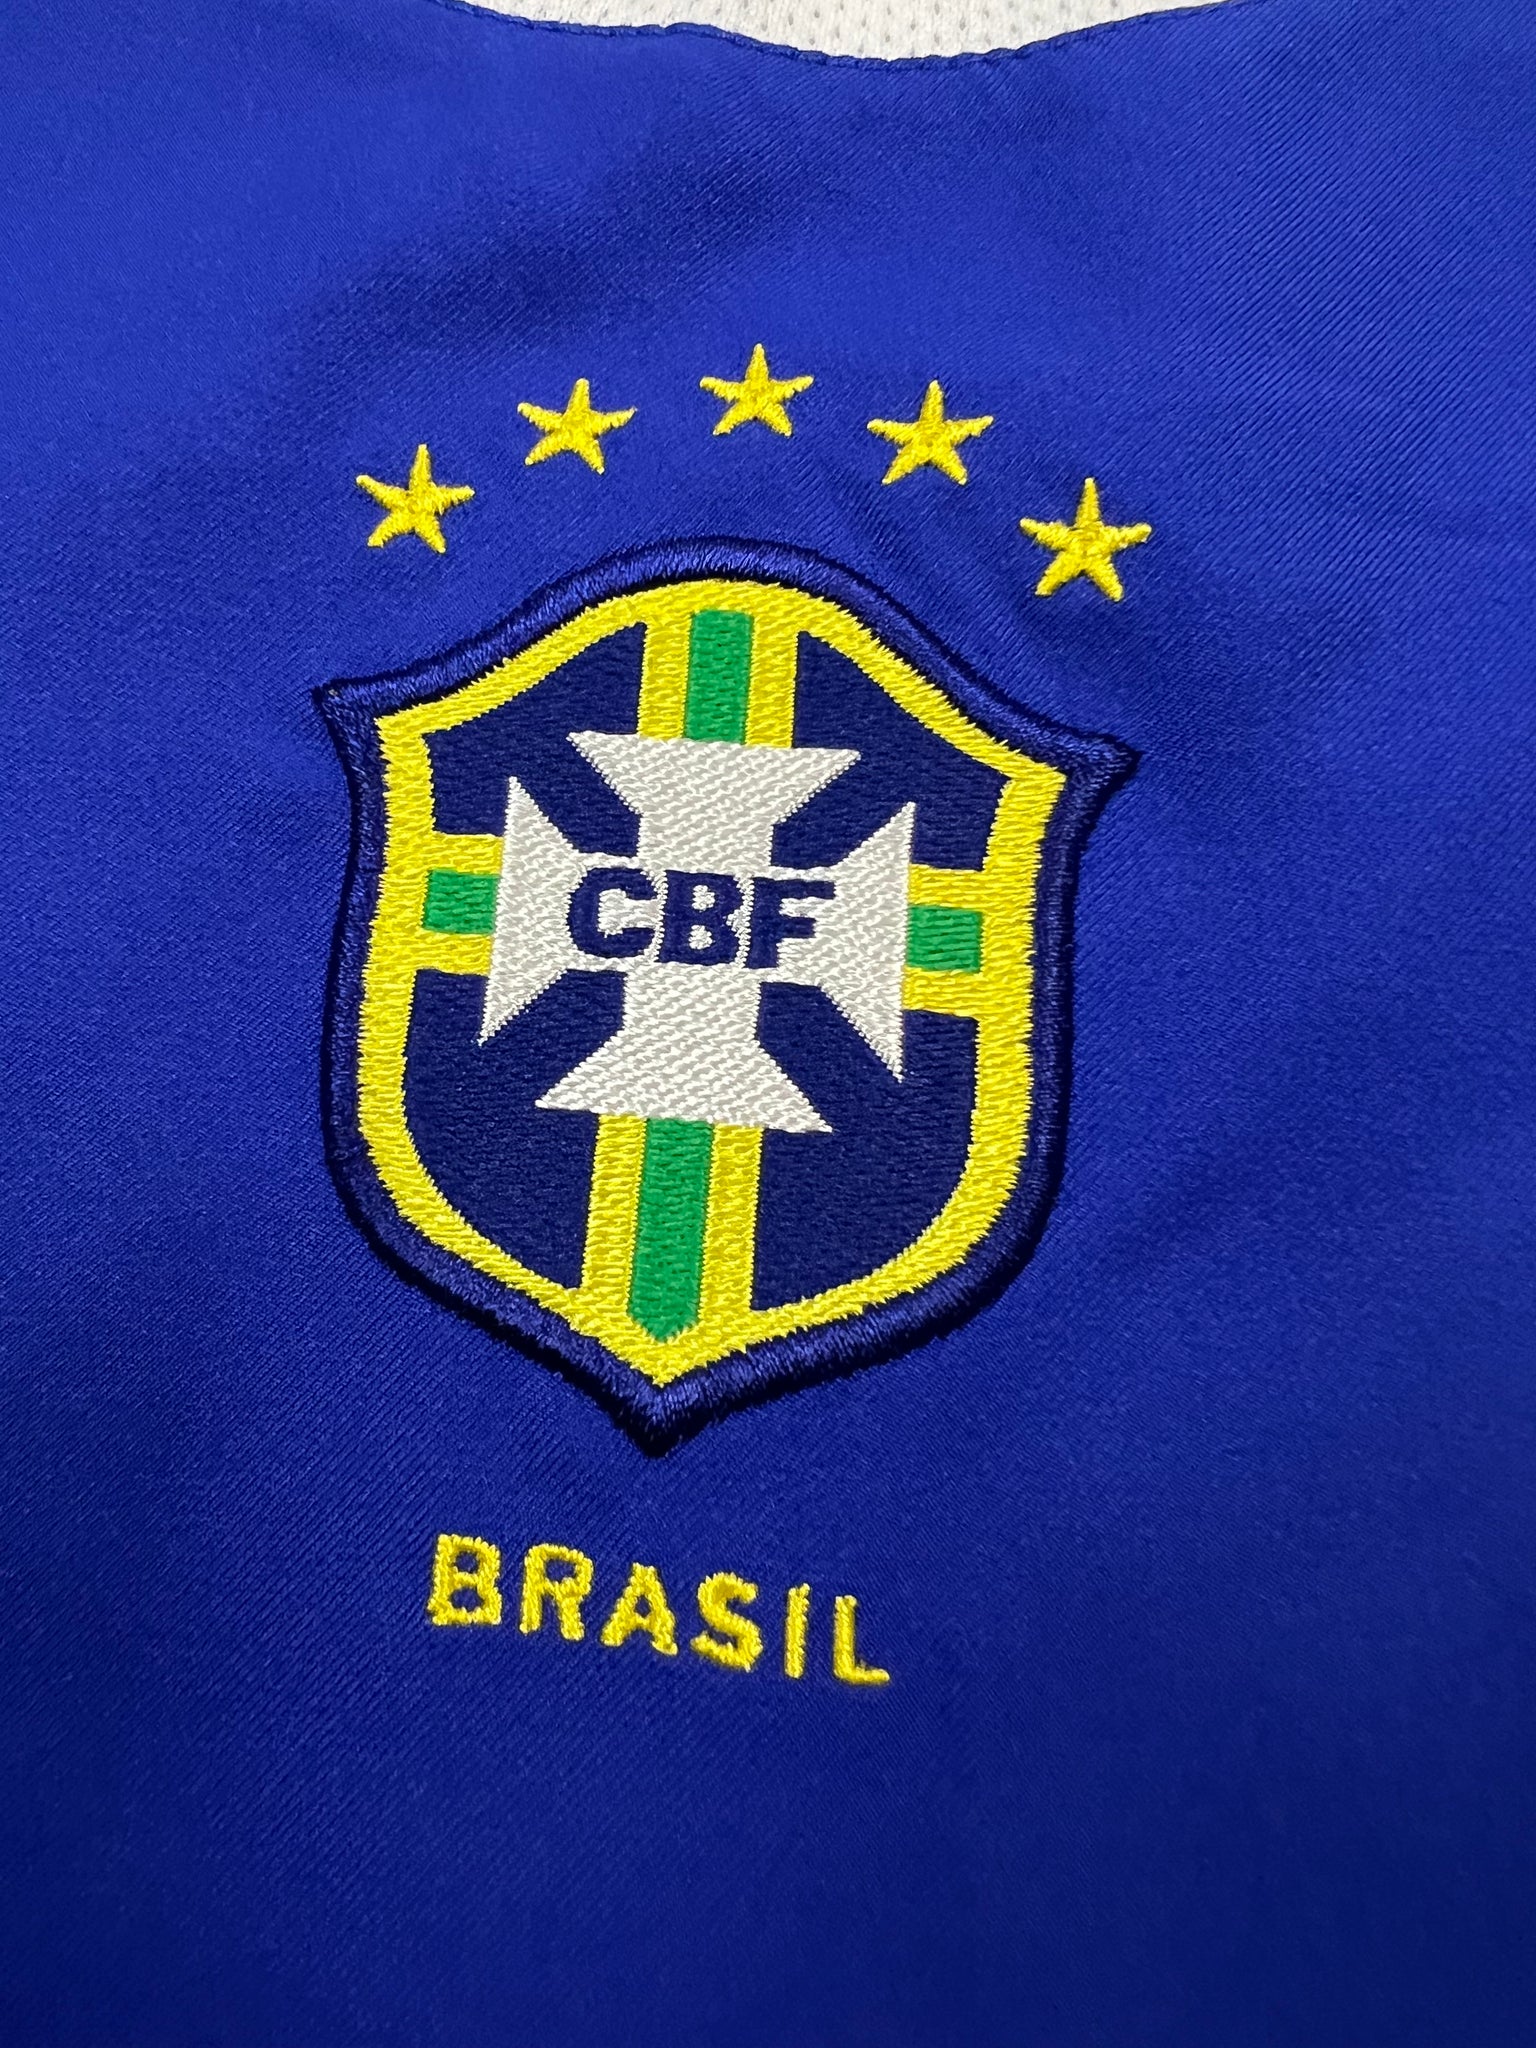 Nike Brazil Jersey (XL)